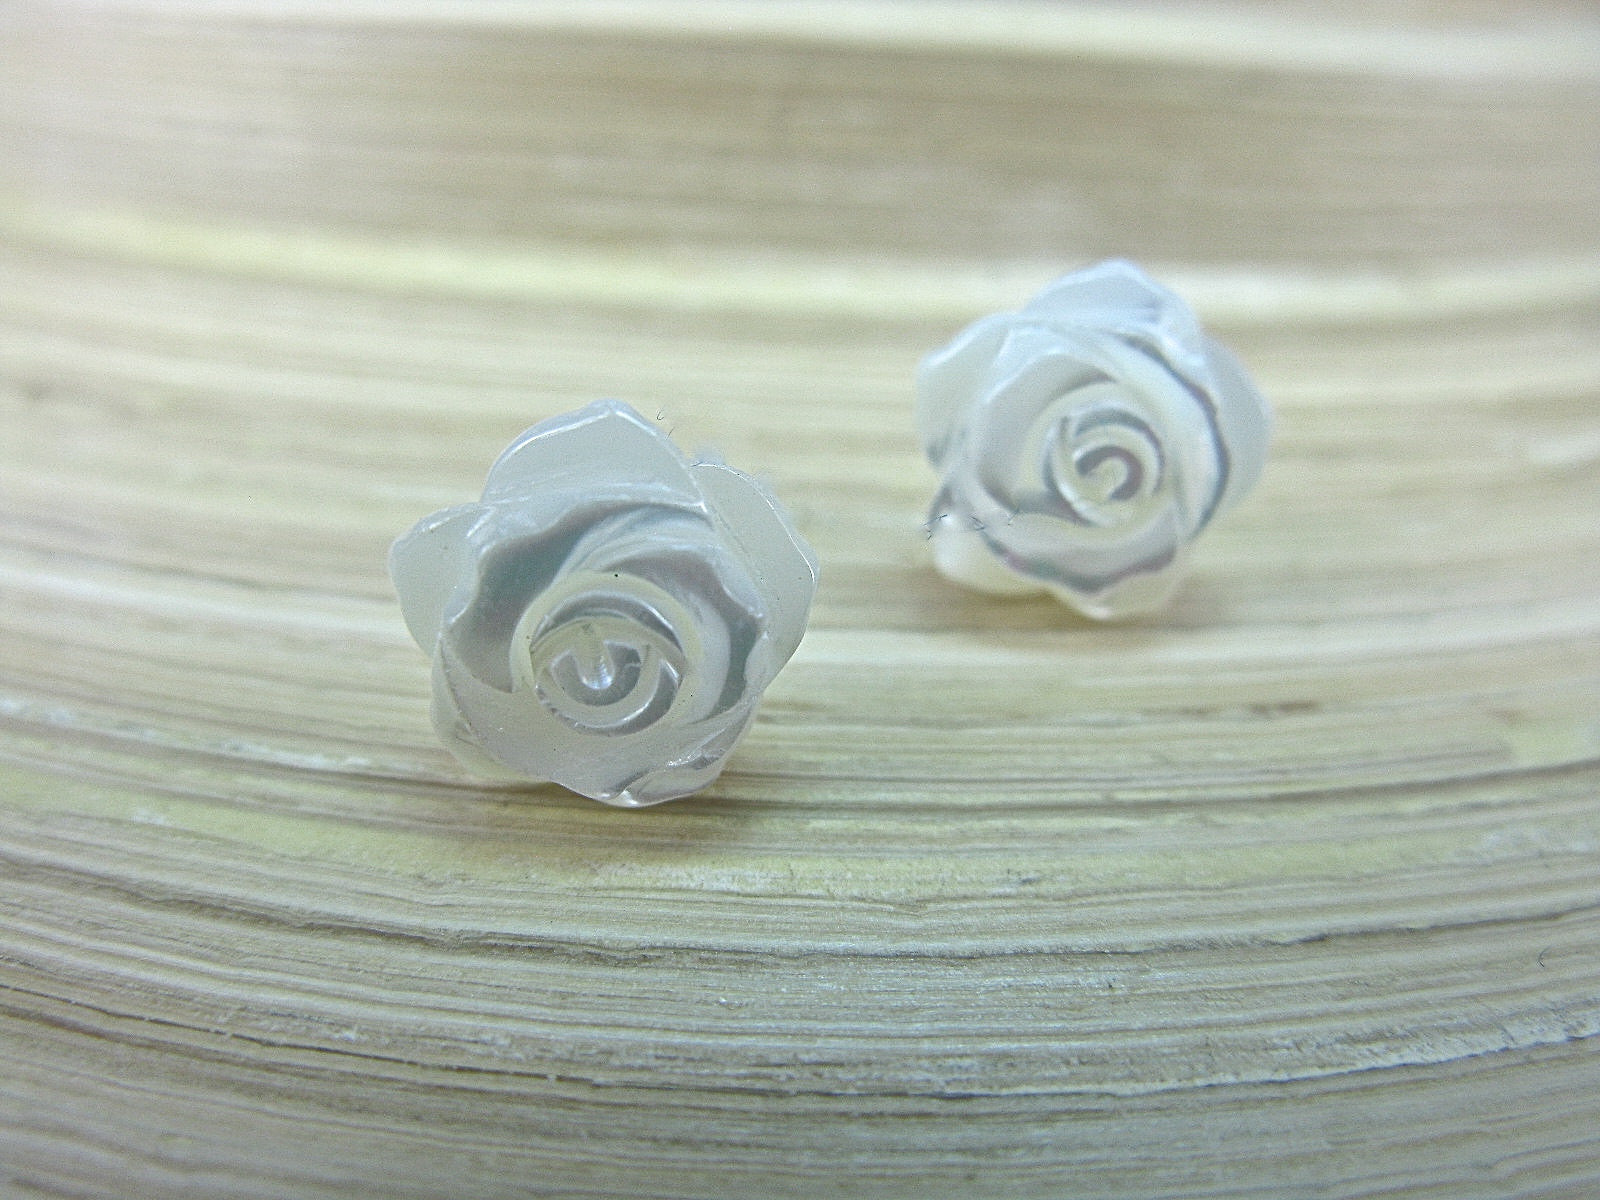 Rose Mother of Pearl Flower Stud Earrings in 925 Sterling Silver